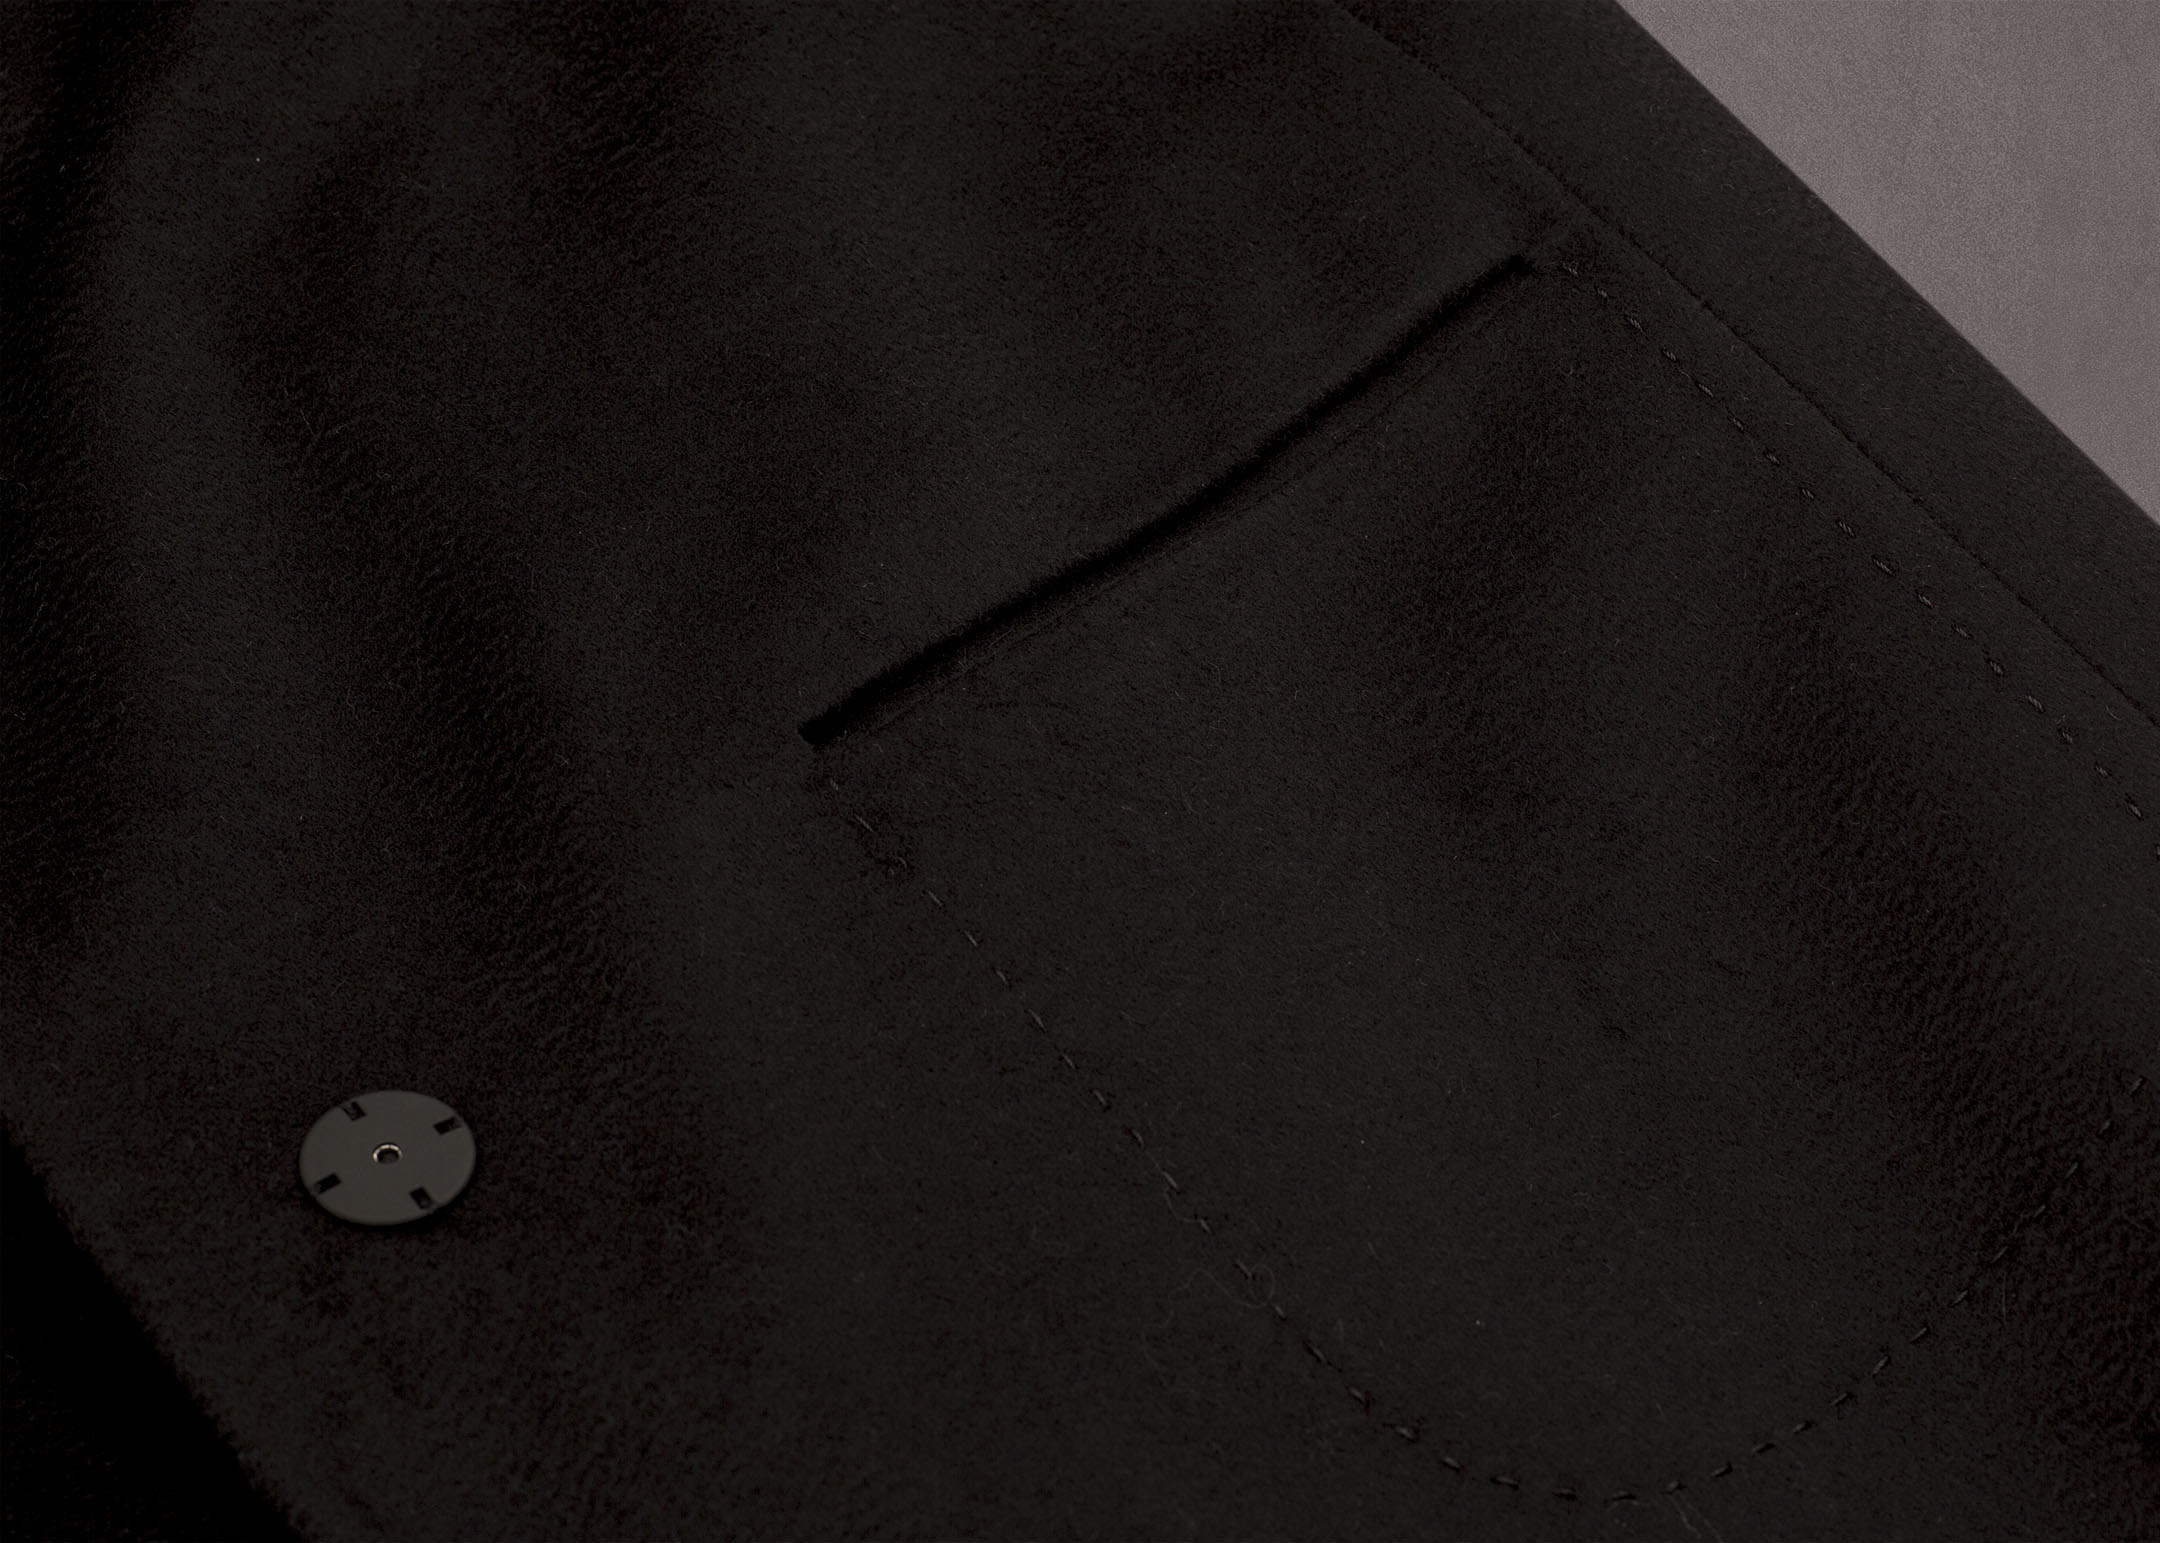 Meldes De Luxe – Wool coat wide collar – Black – Ref: 371-1-01